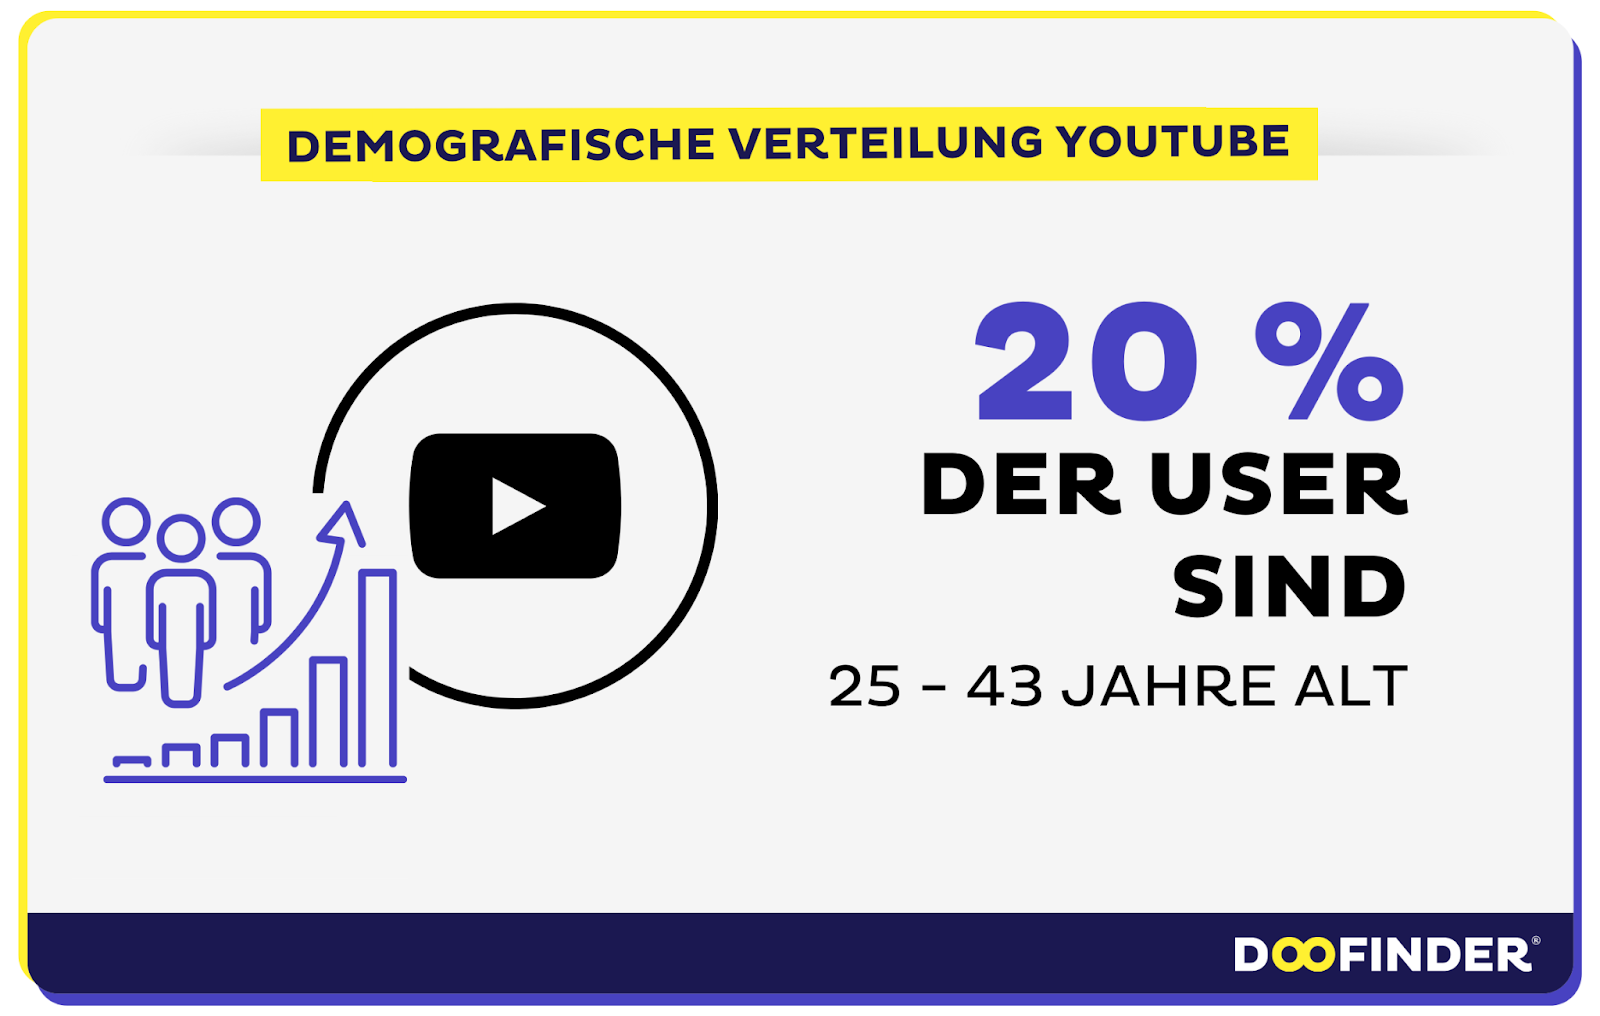 Die Demografie der globalen und deutschen YouTube-Nutzer:innen